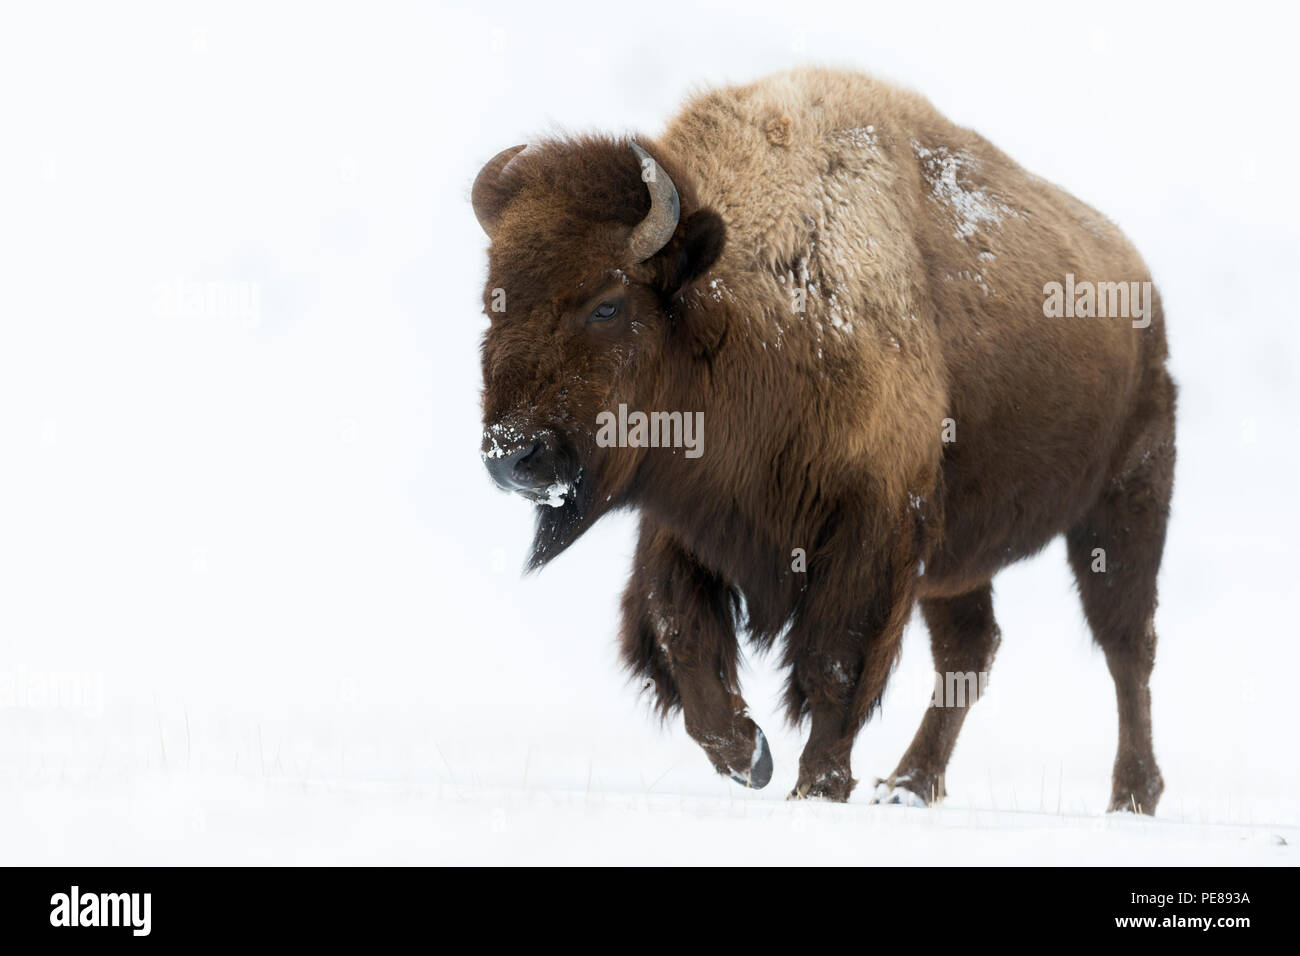 Bisontes americanos / Amerikanischer bisonte (Bison bison ) en invierno, impresionante hembra adulta, caminar a través de la nieve, alta área de Yellowstone, Wyoming, Estados Unidos. Foto de stock